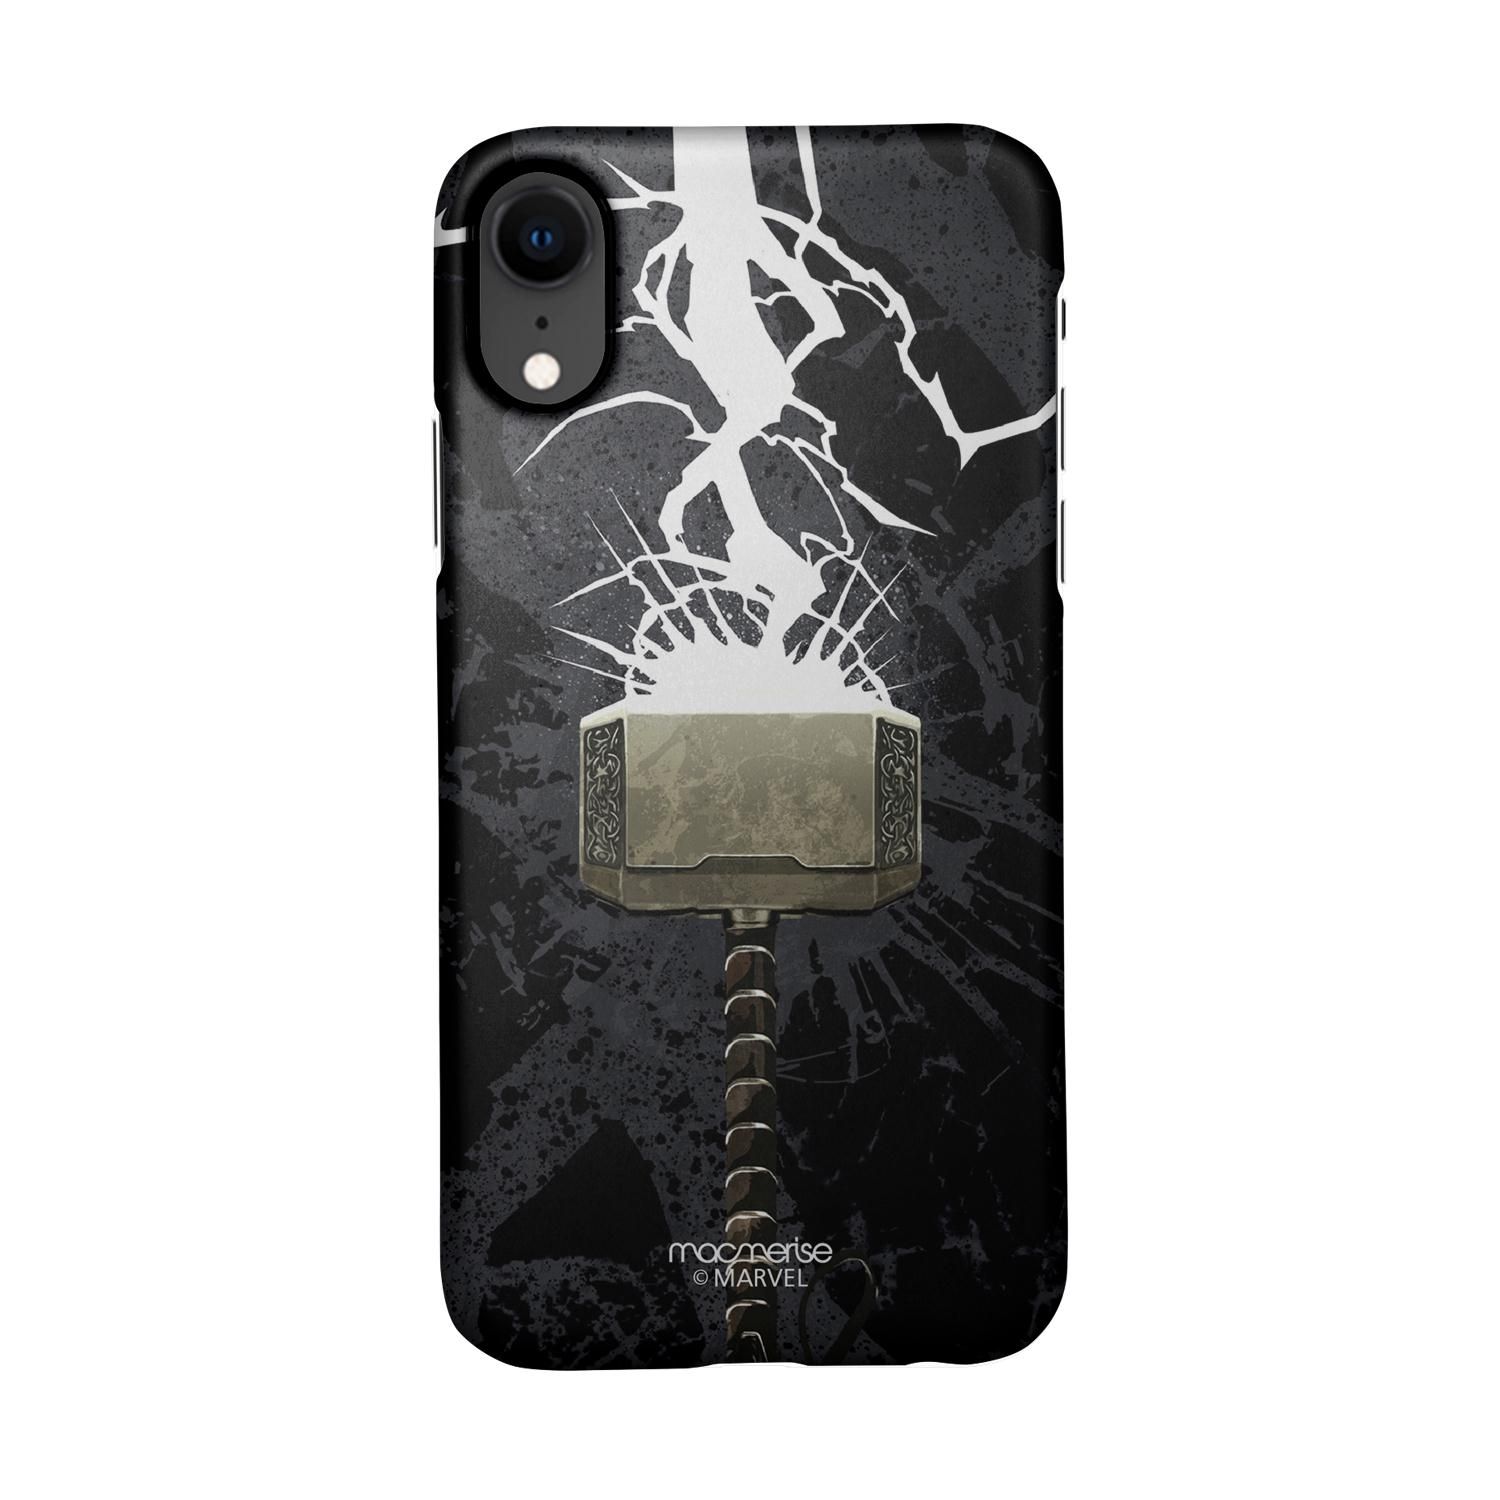 Buy The Thunderous Hammer - Sleek Phone Case for iPhone XR Online